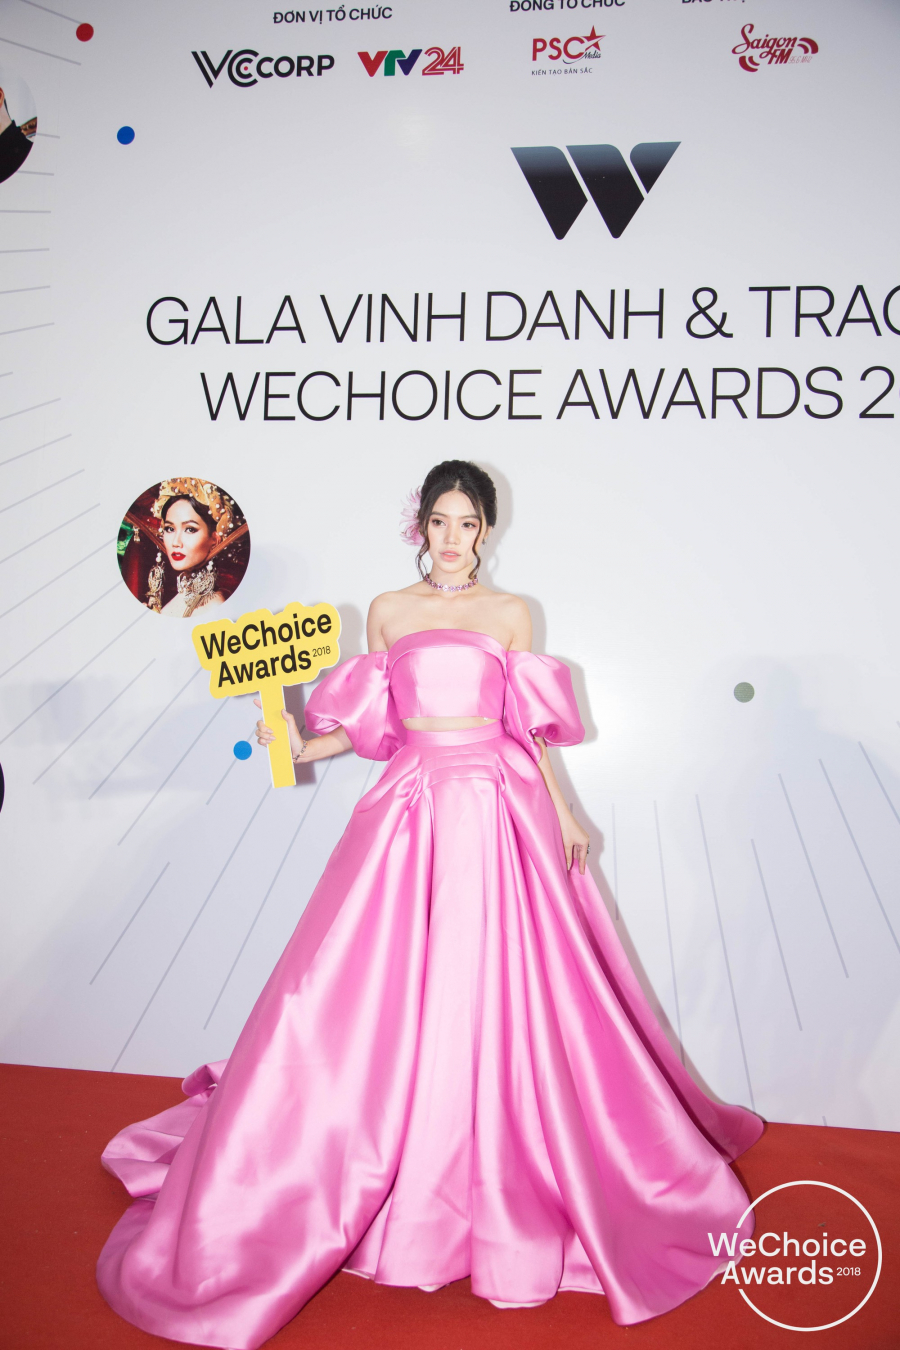 Hoa hậu người Việt tại Úc gần như đã hóa thành cô công chúa trong phim Disney. Kiểu đầm bồng xòe, làm từ chất satin bóng quả thực khá 